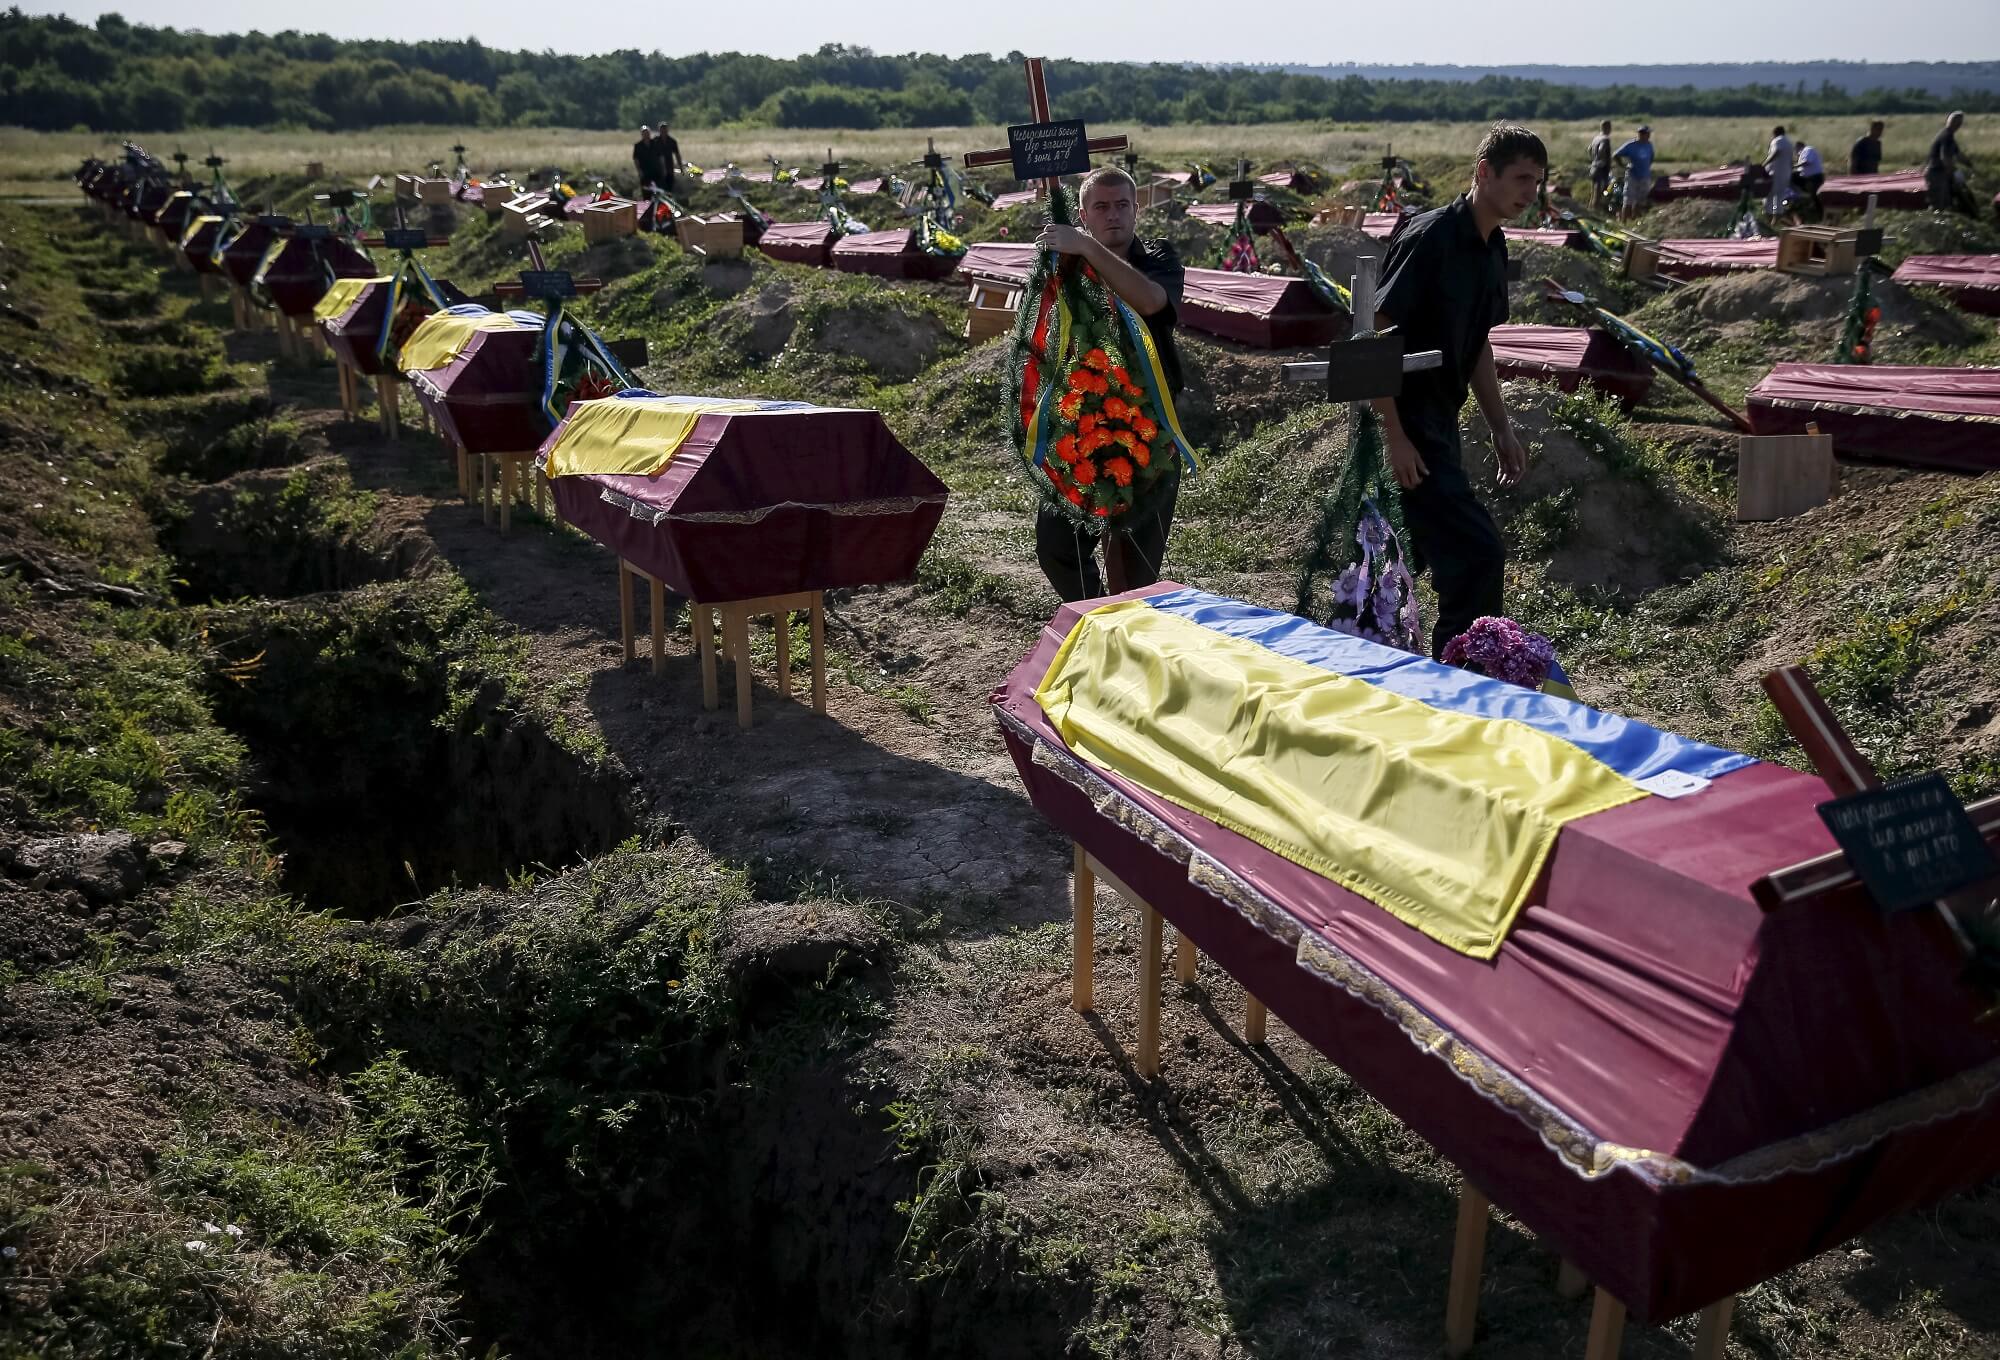 Gerrits - Massabegrafenis van Oekraïnse militairen gesneuveld tijdens gevechtshandelingen in Oost-Oekraïne in 2015. Reuters